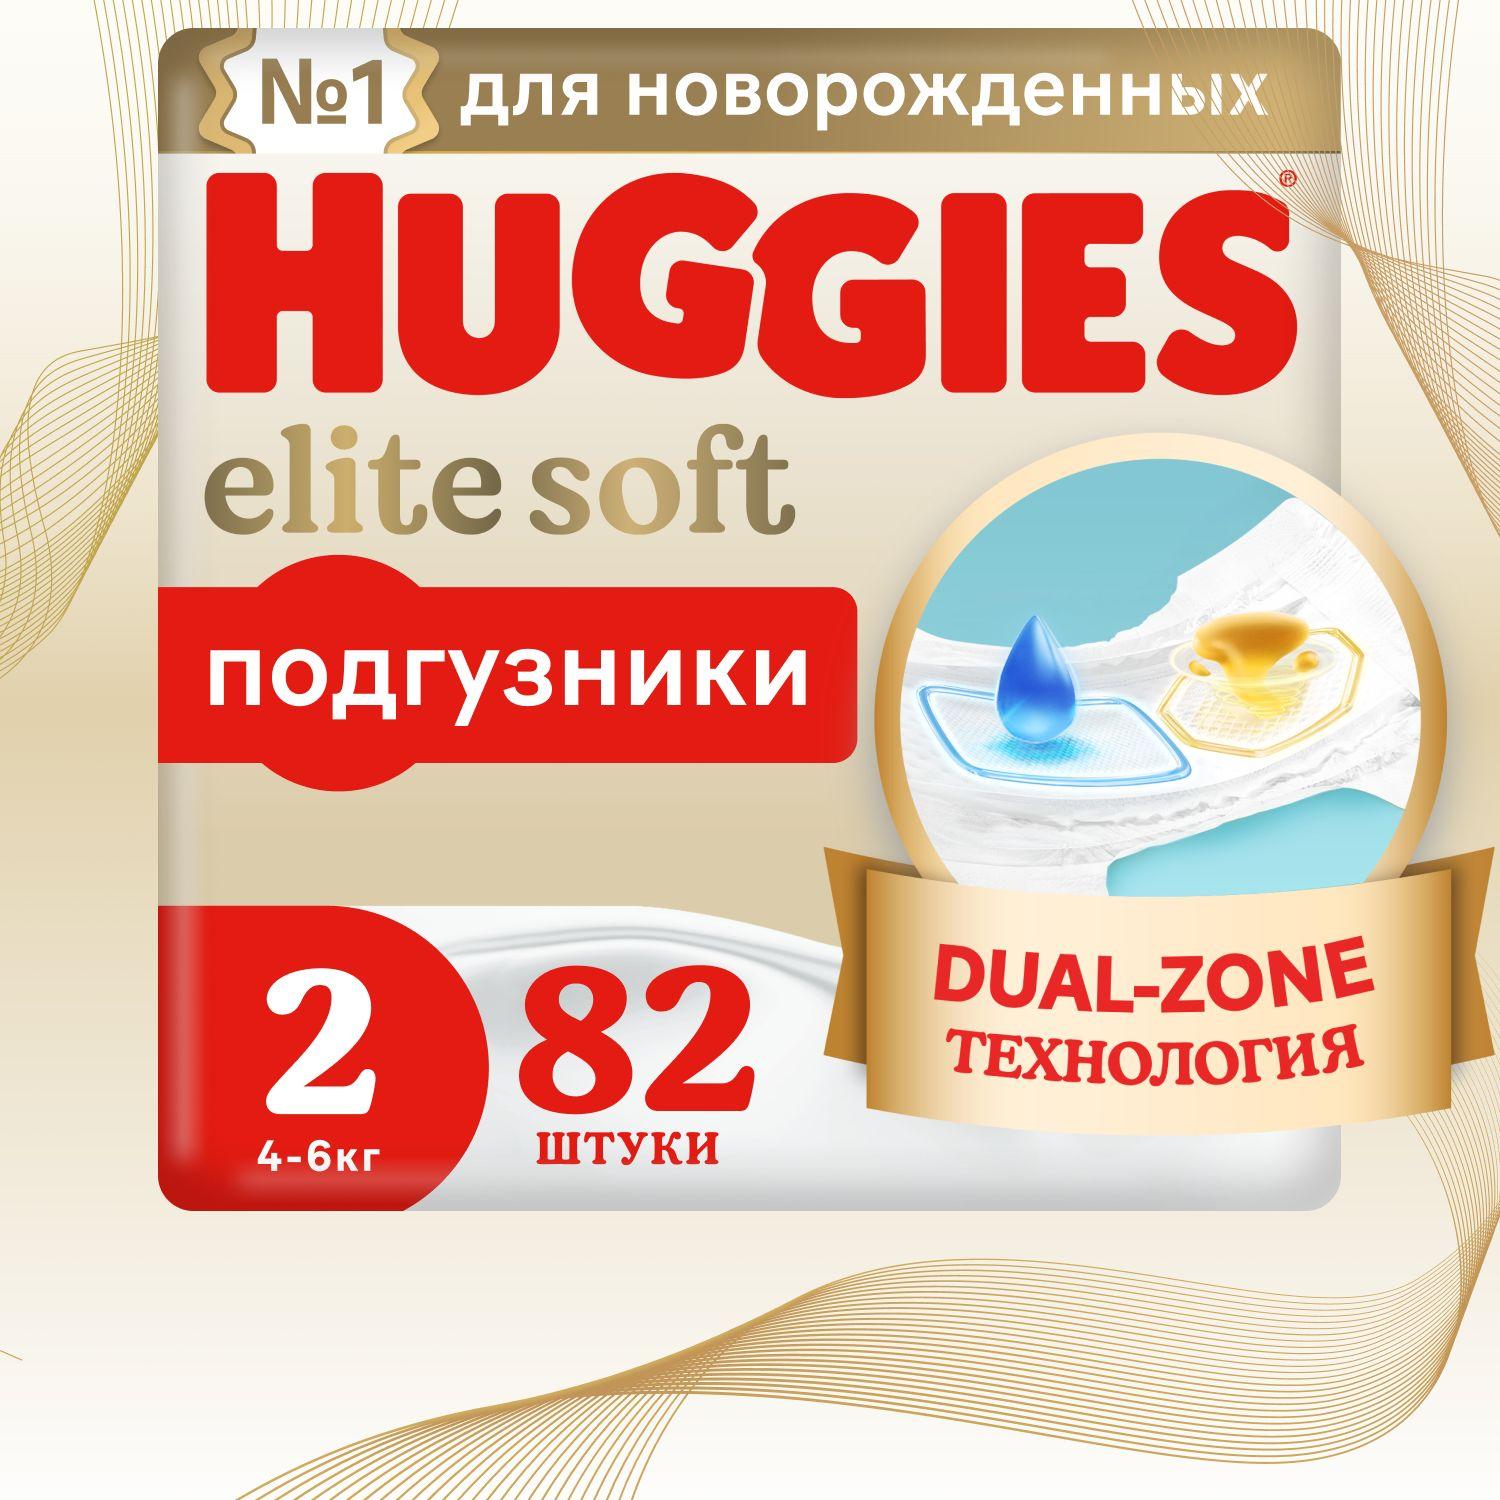 Подгузники для новорожденных Huggies Elite Soft 2 S размер, 4-6 кг, 82 шт